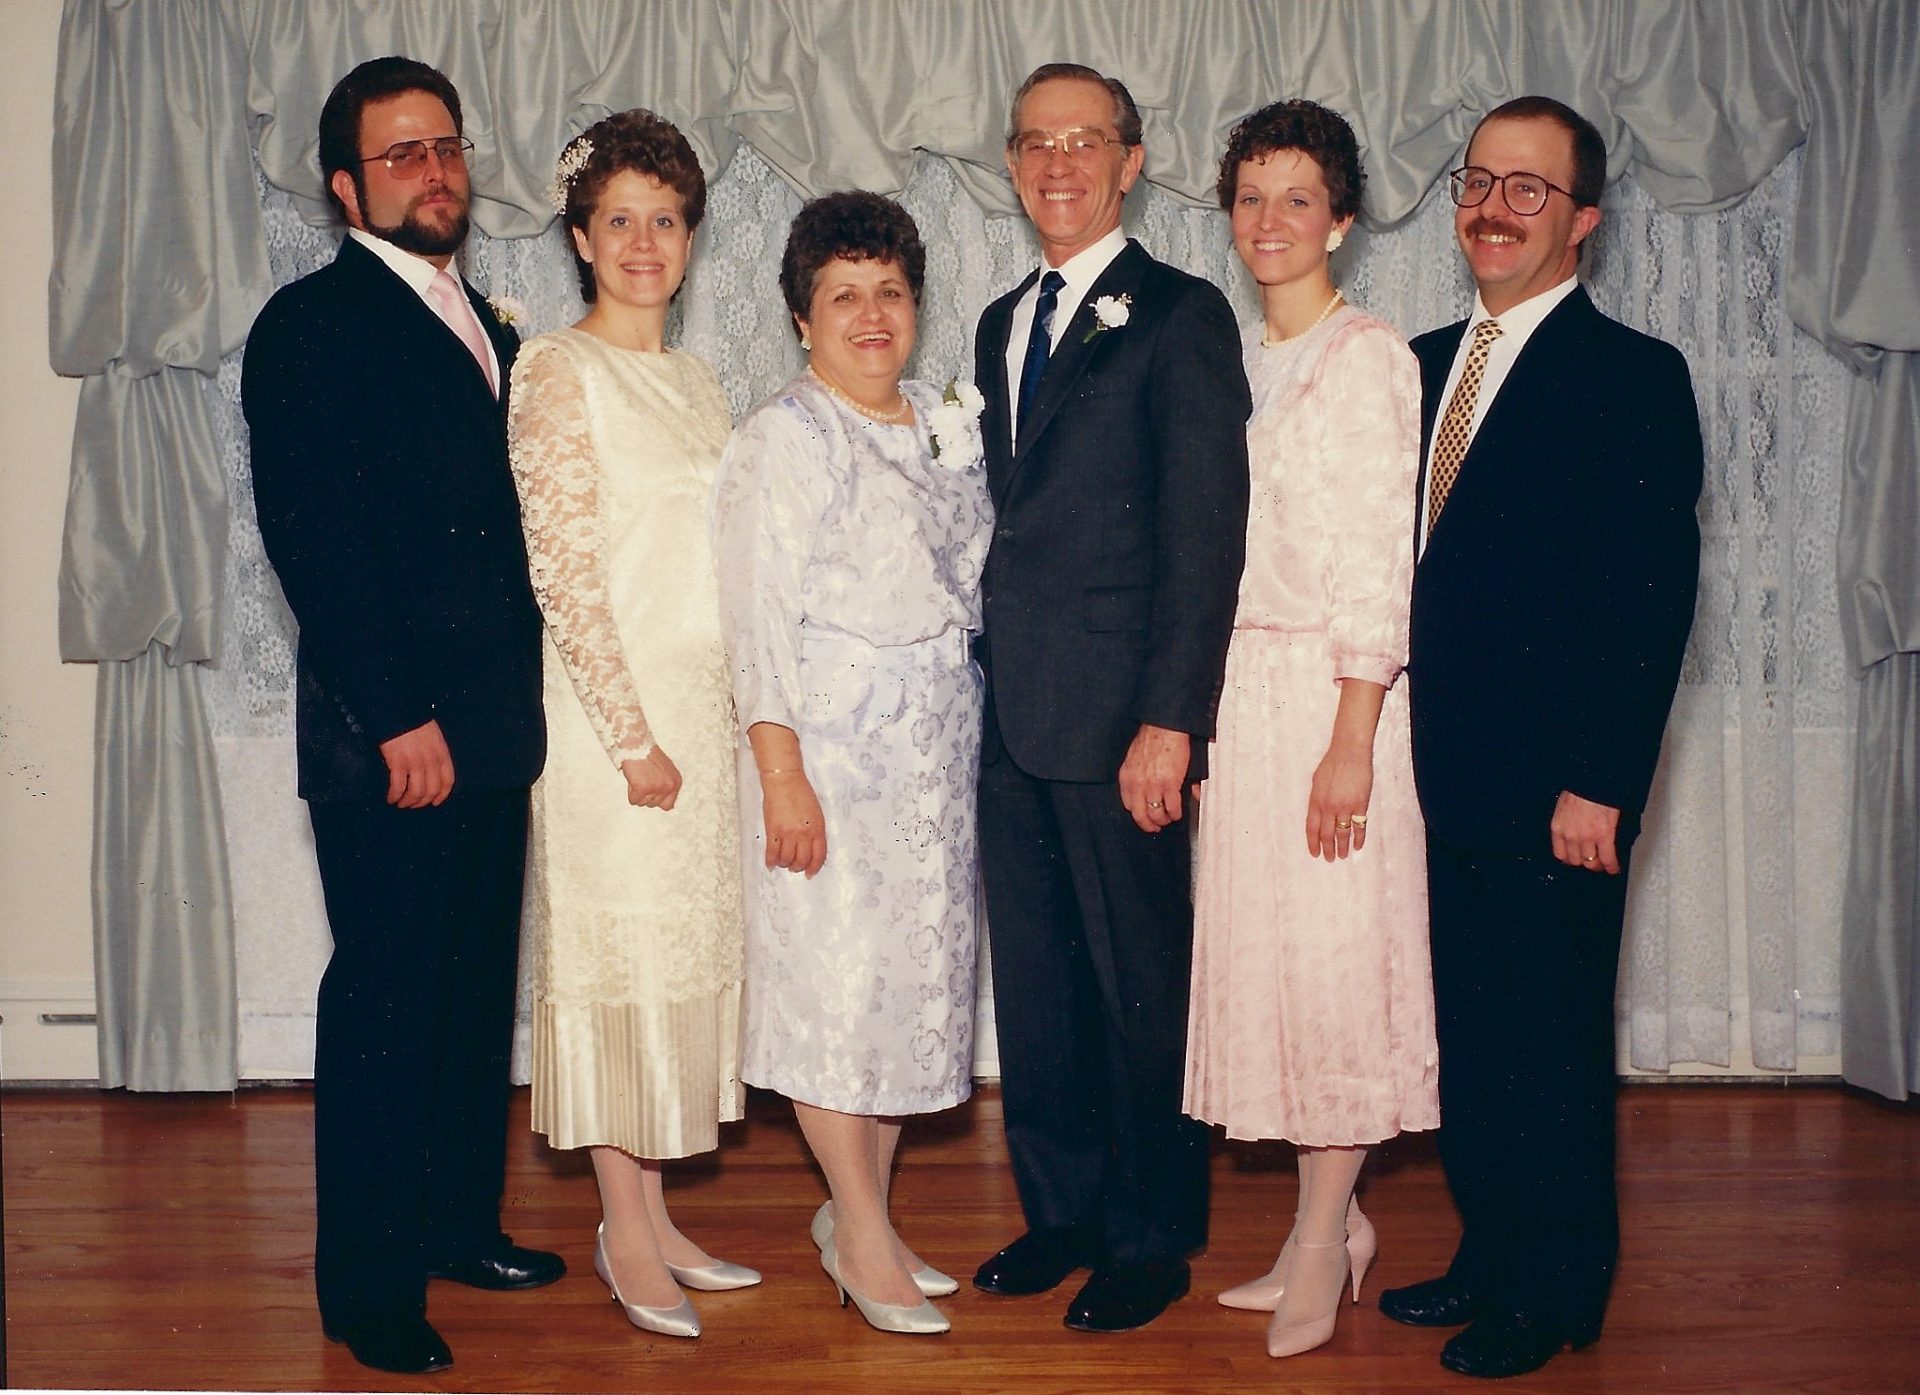 Butch at Martha's Wedding 1988